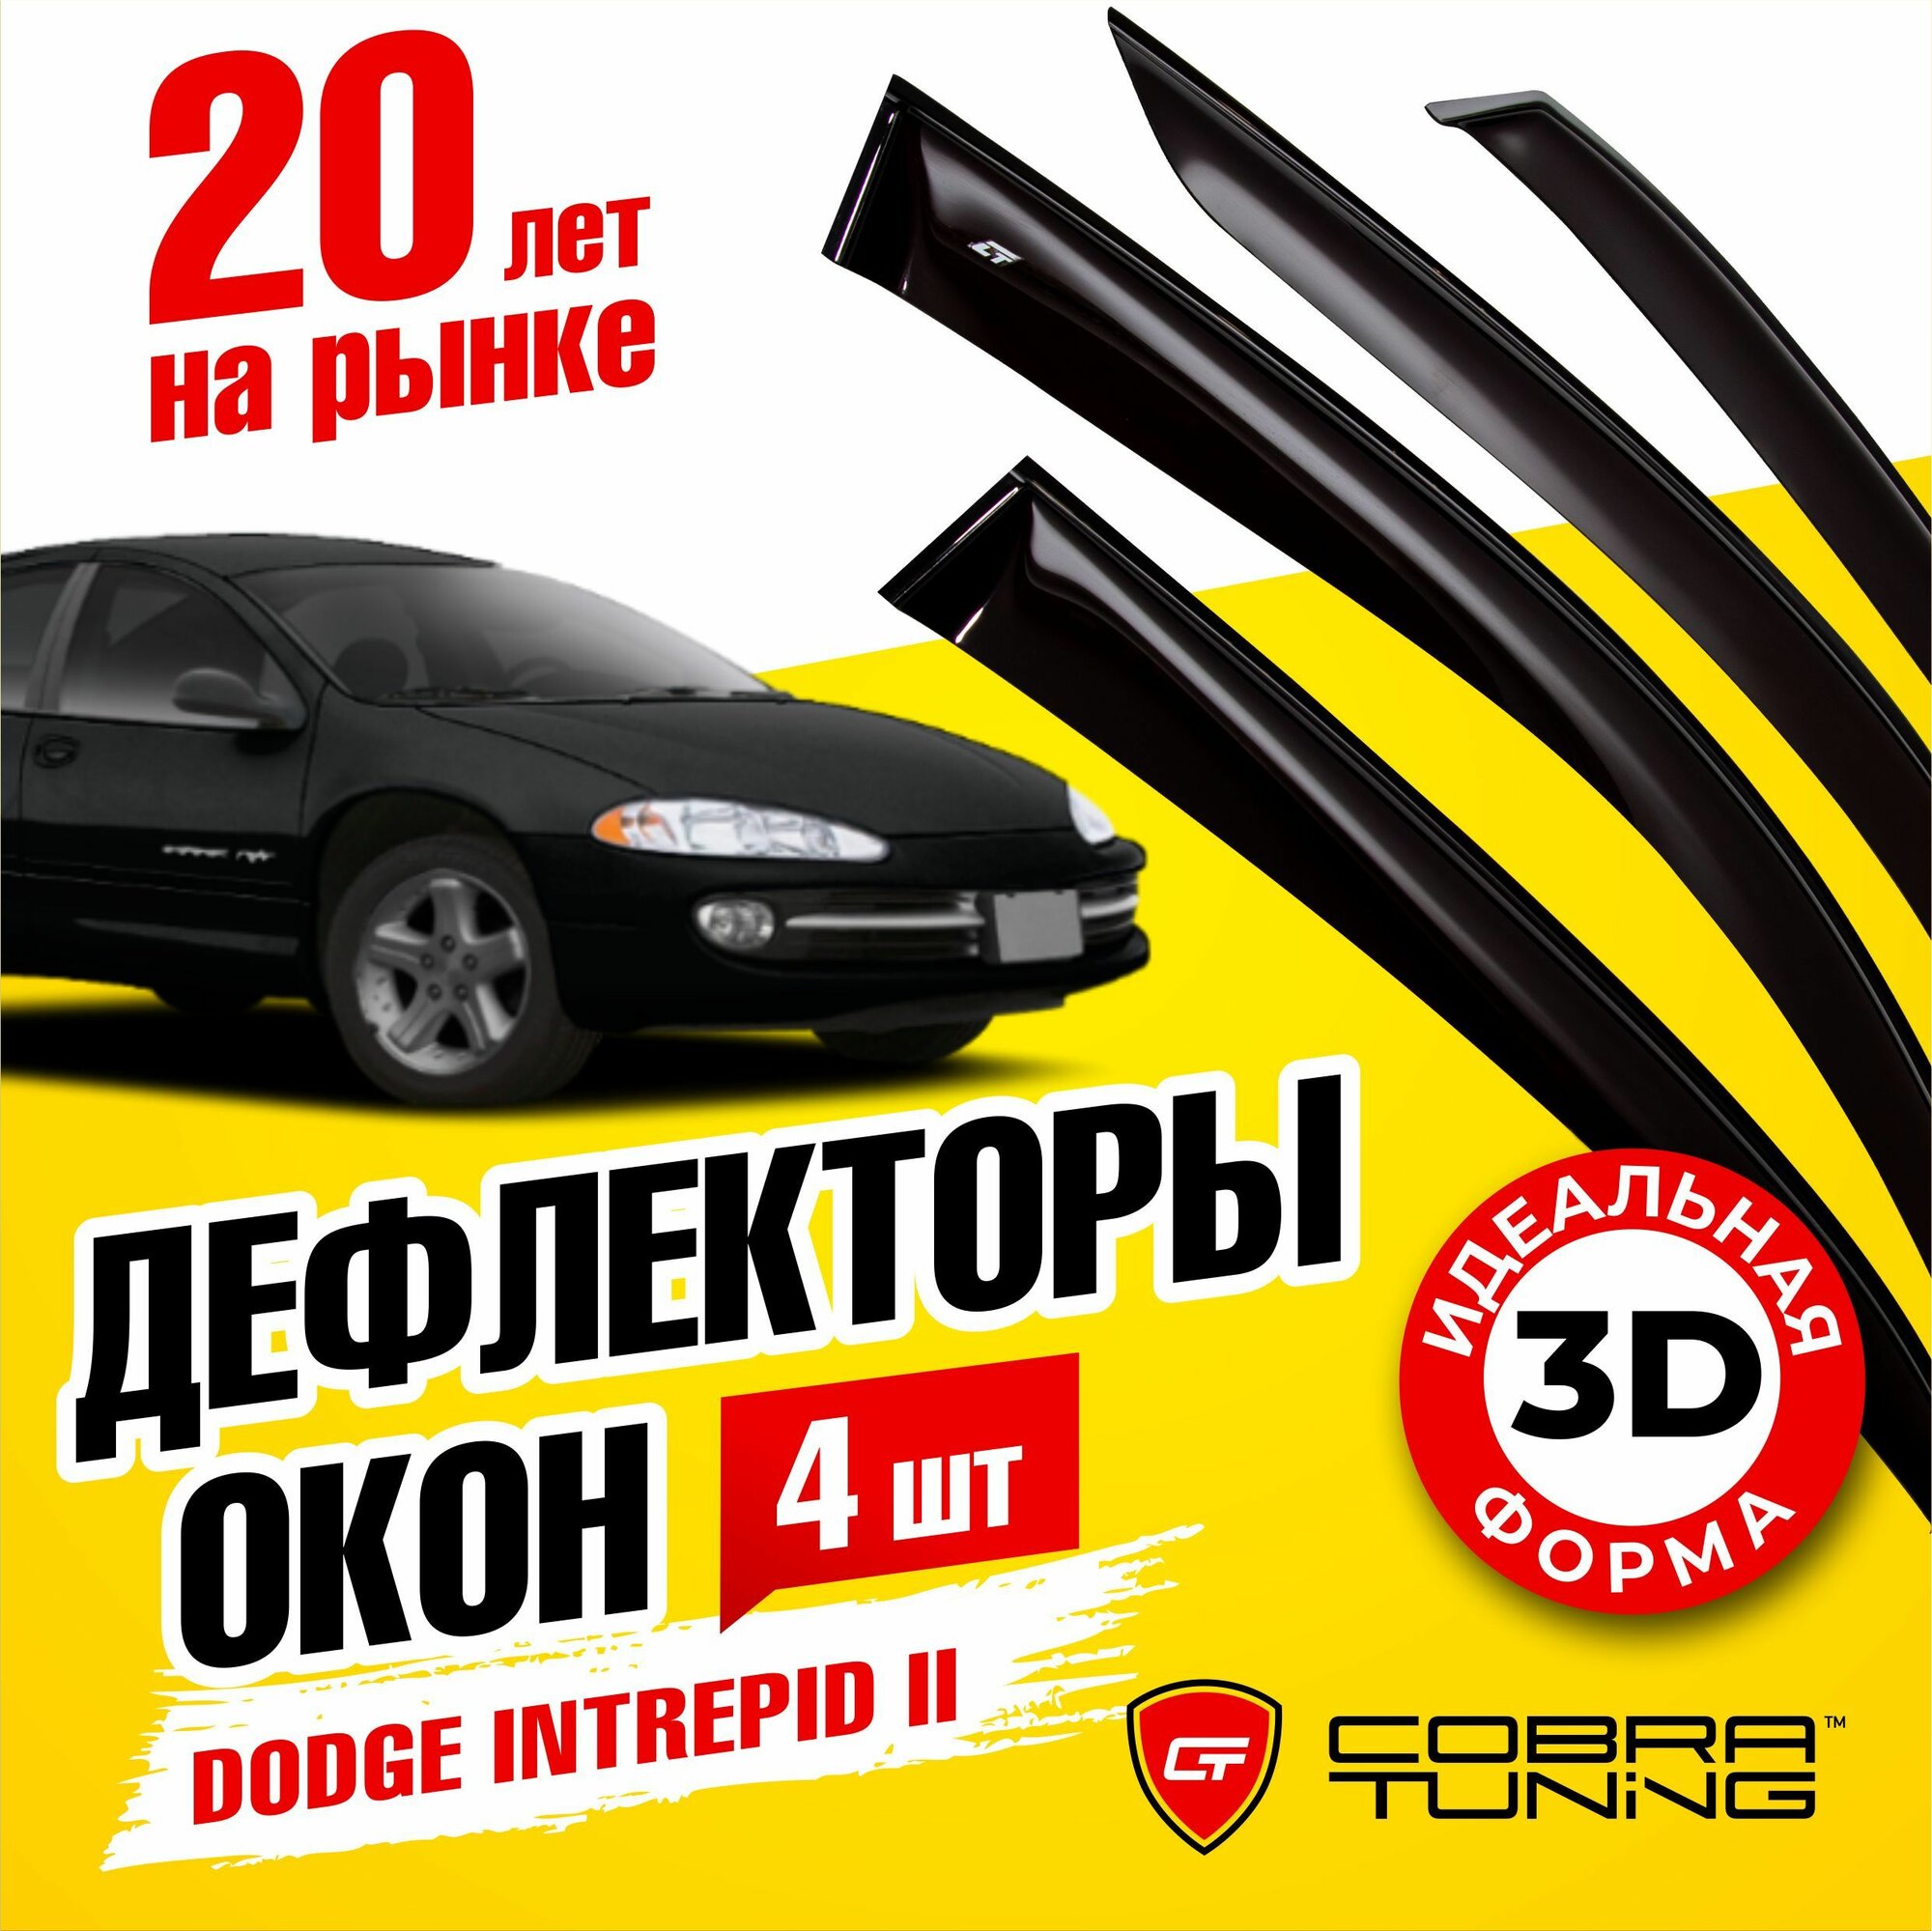 Дефлекторы боковых окон для Dodge Intrepid 2 (Додж Интрепид) седан 1998-2014 ветровики на двери автомобиля Cobra Tuning